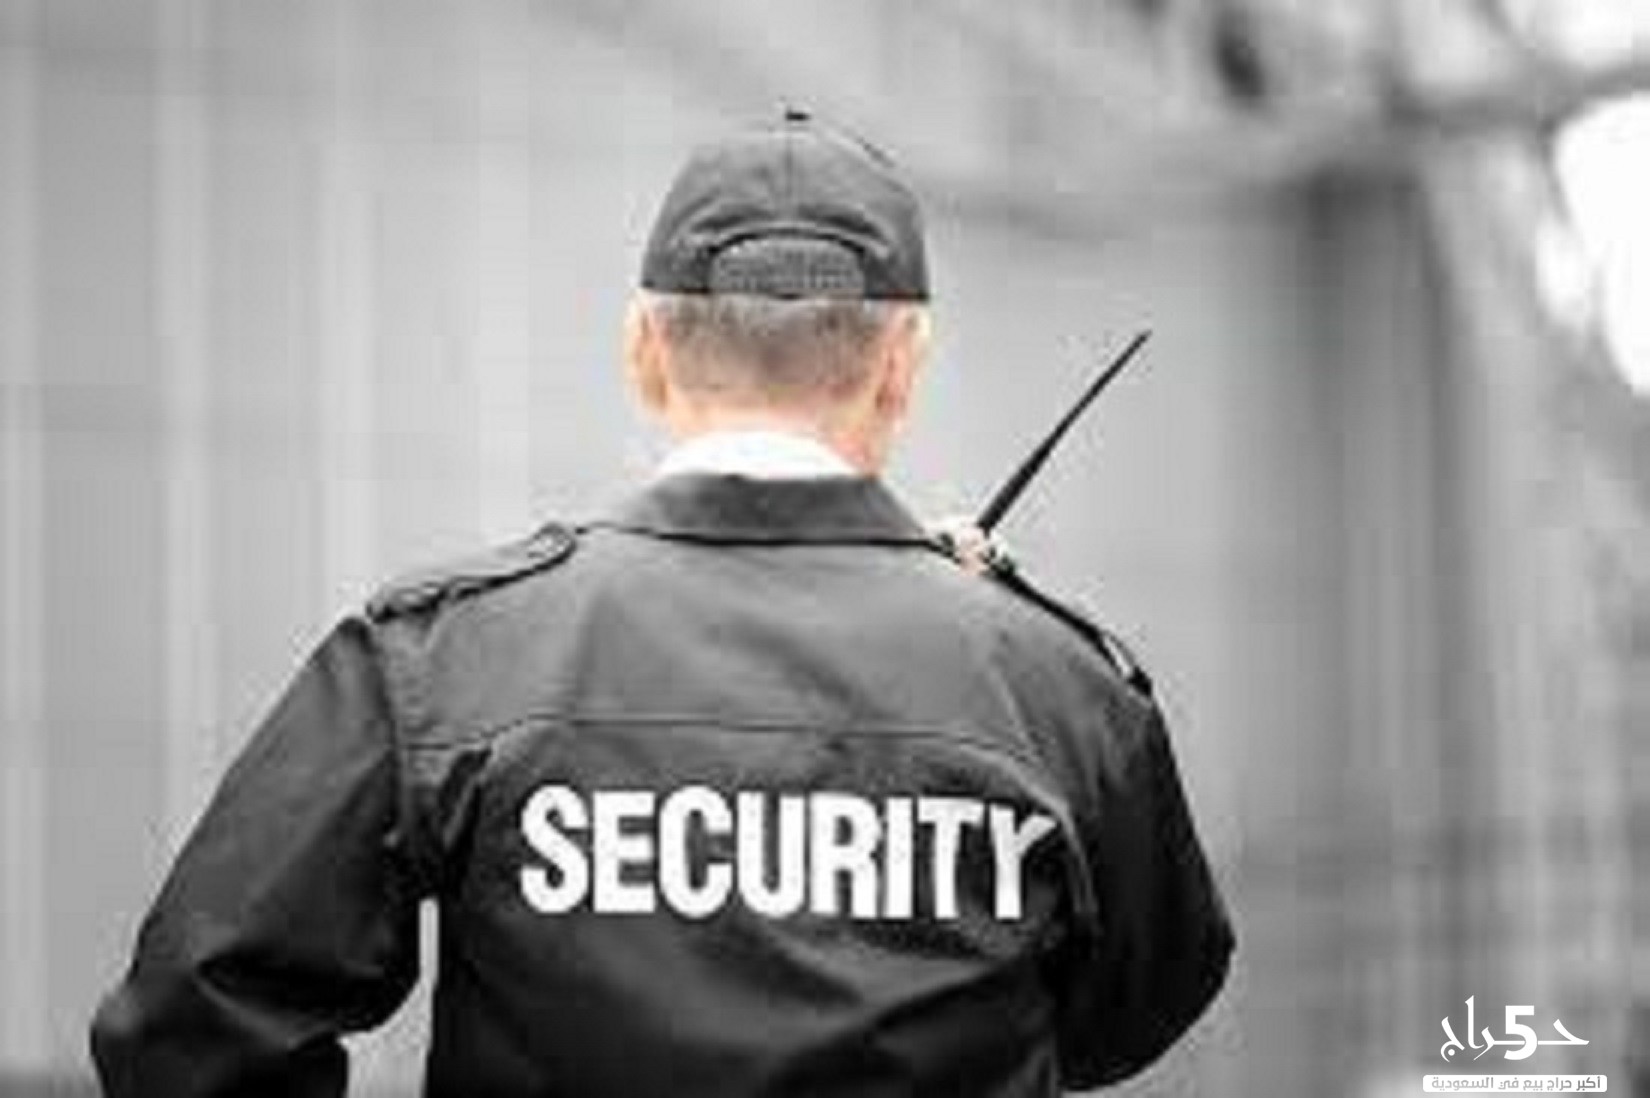 محتاج حراس امن لموقعك او منشأتك؟شركة امنية تقدم خدمات امنية عالية الكفاءة